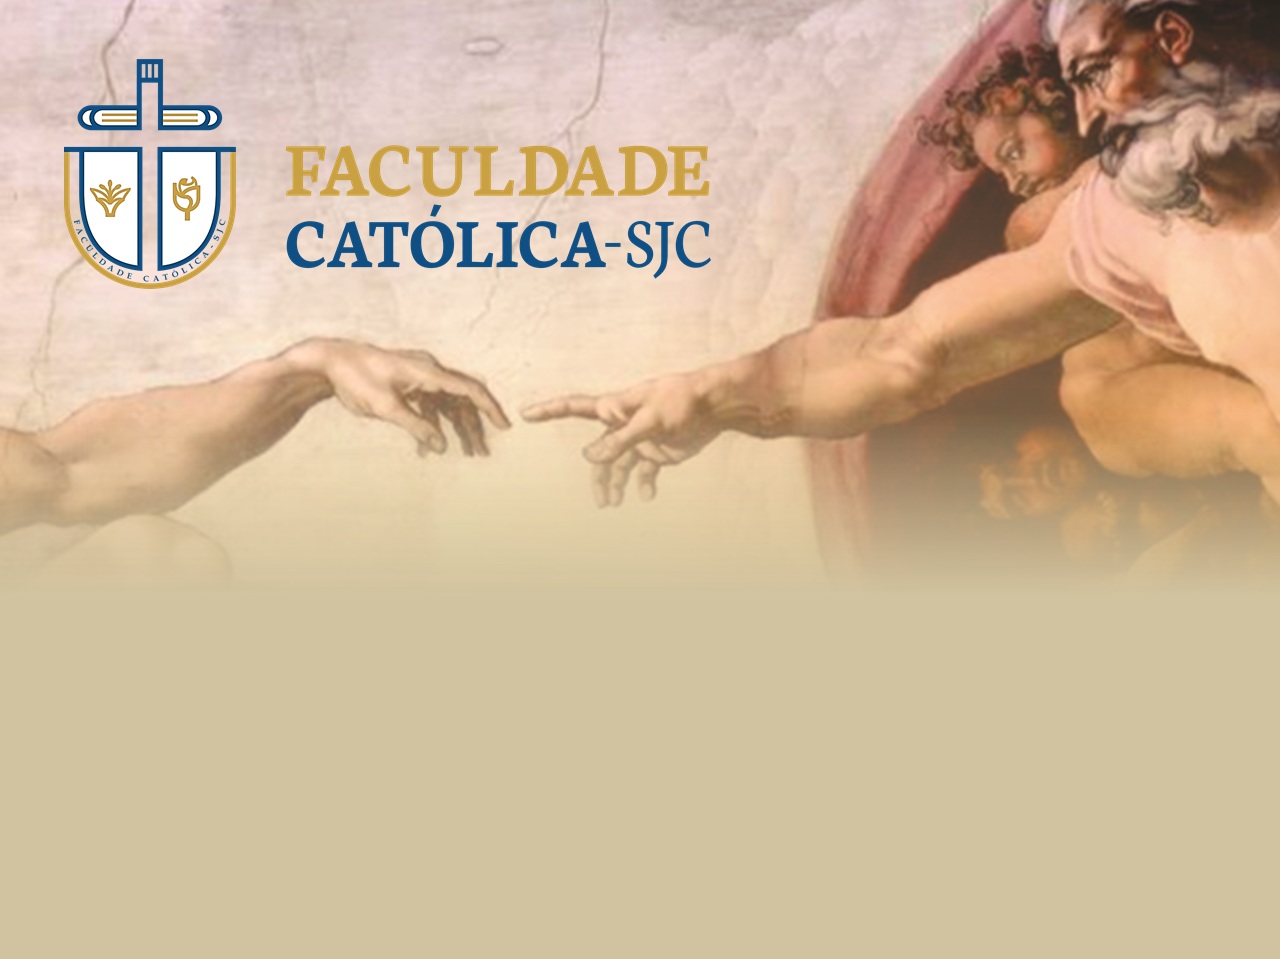 Faculdade Católica abre novo processo seletivo